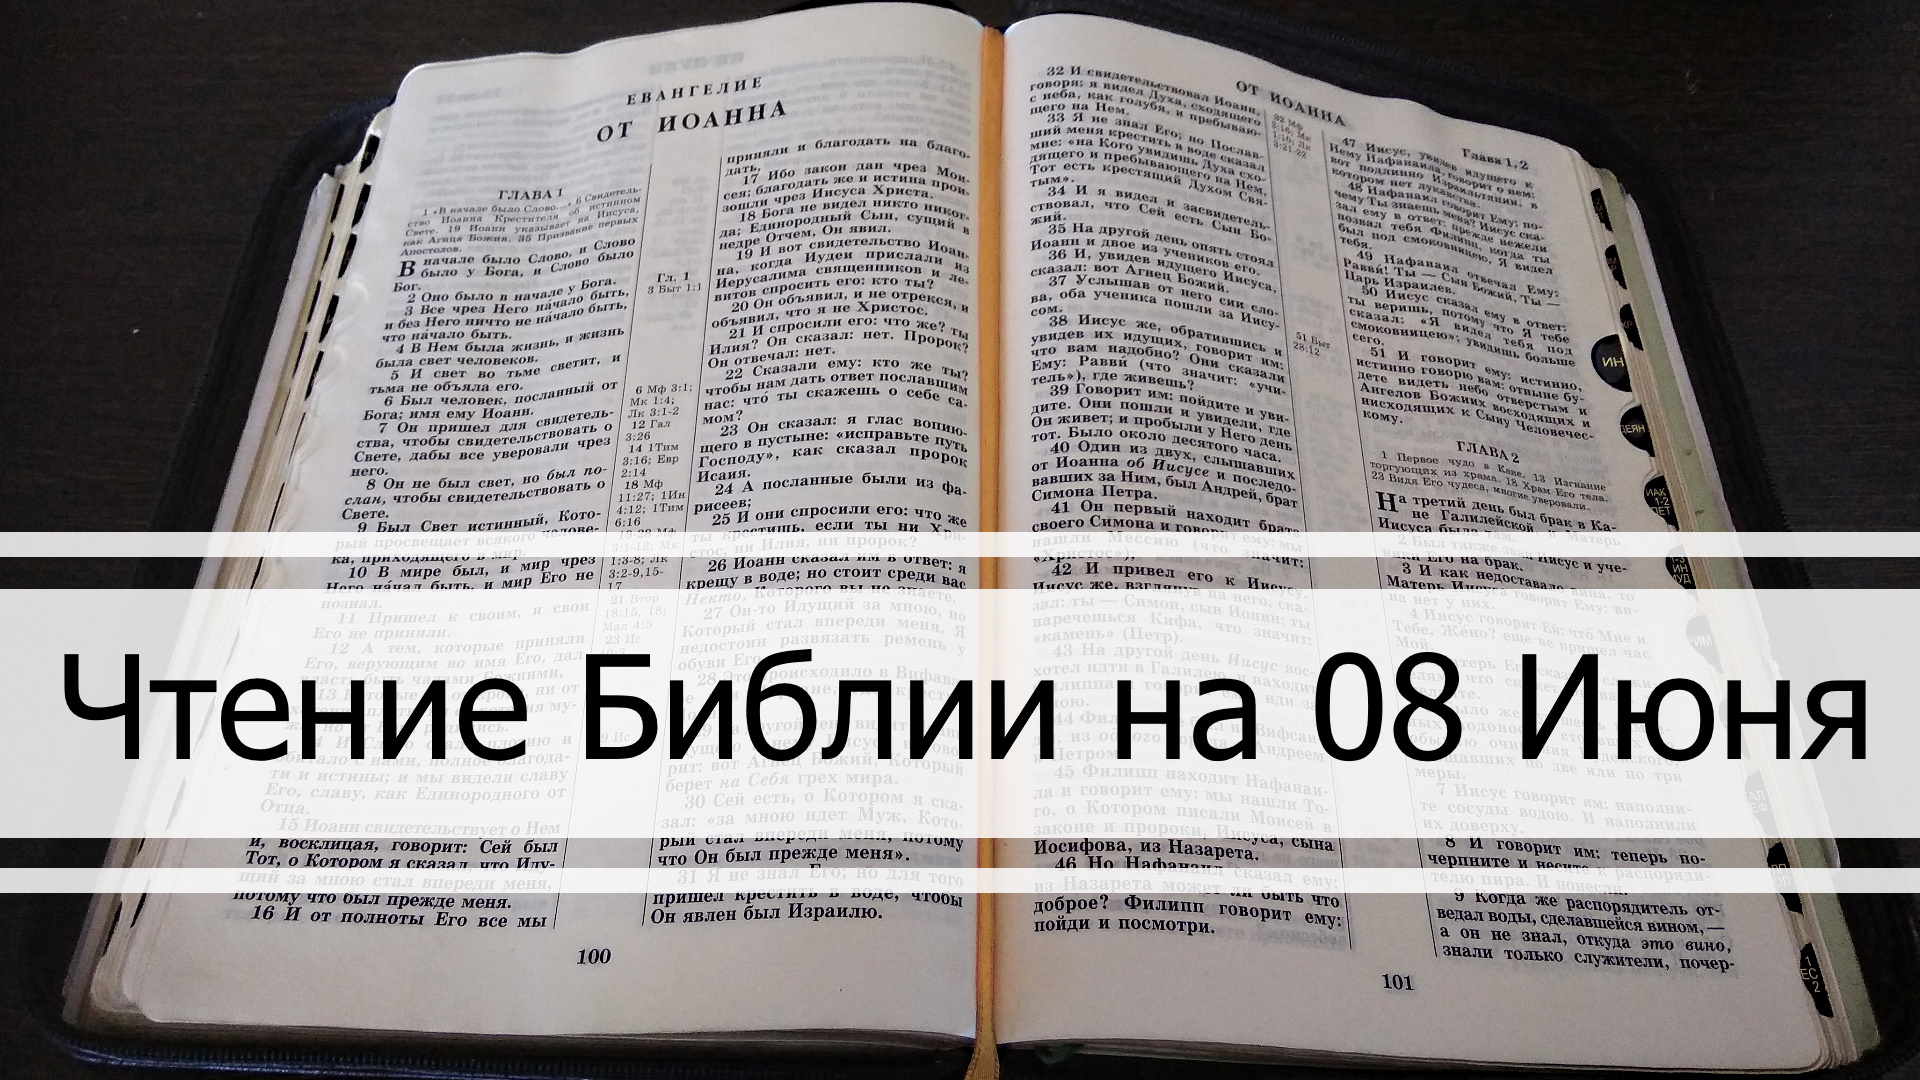 Чтение Библии на 08 Июня: Притчи Соломона 8, Евангелие от Иоанна 18, 3 Кинга Царств 3, 4